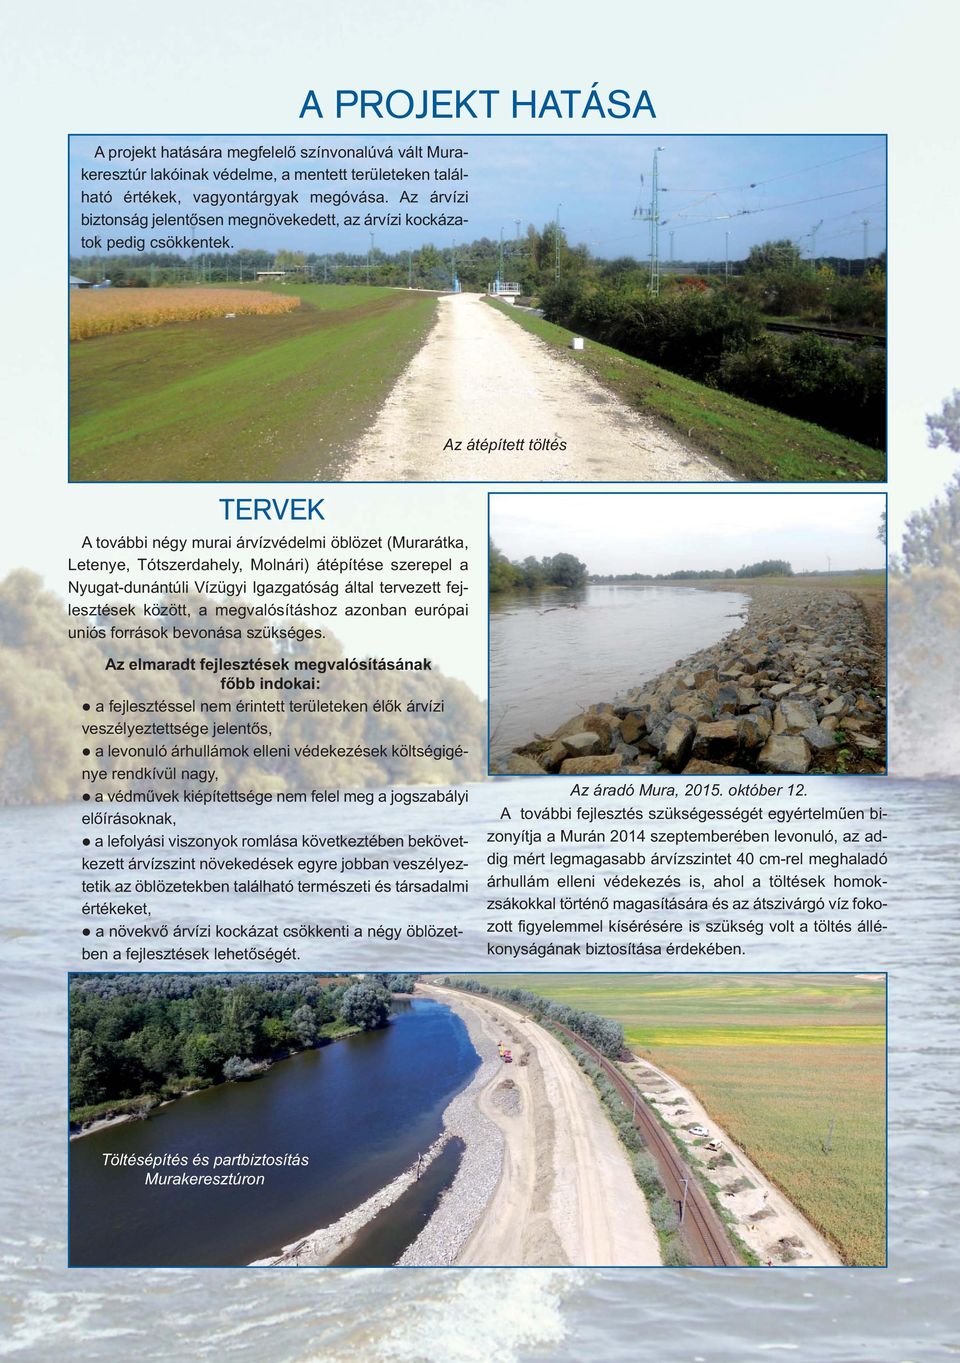 A PROJEKT HATÁSA Az átépített töltés TERVEK A további négy murai árvízvédelmi öblözet (Murarátka, Letenye, Tótszerdahely, Molnári) átépítése szerepel a Nyugat-dunántúli Vízügyi Igazgatóság által